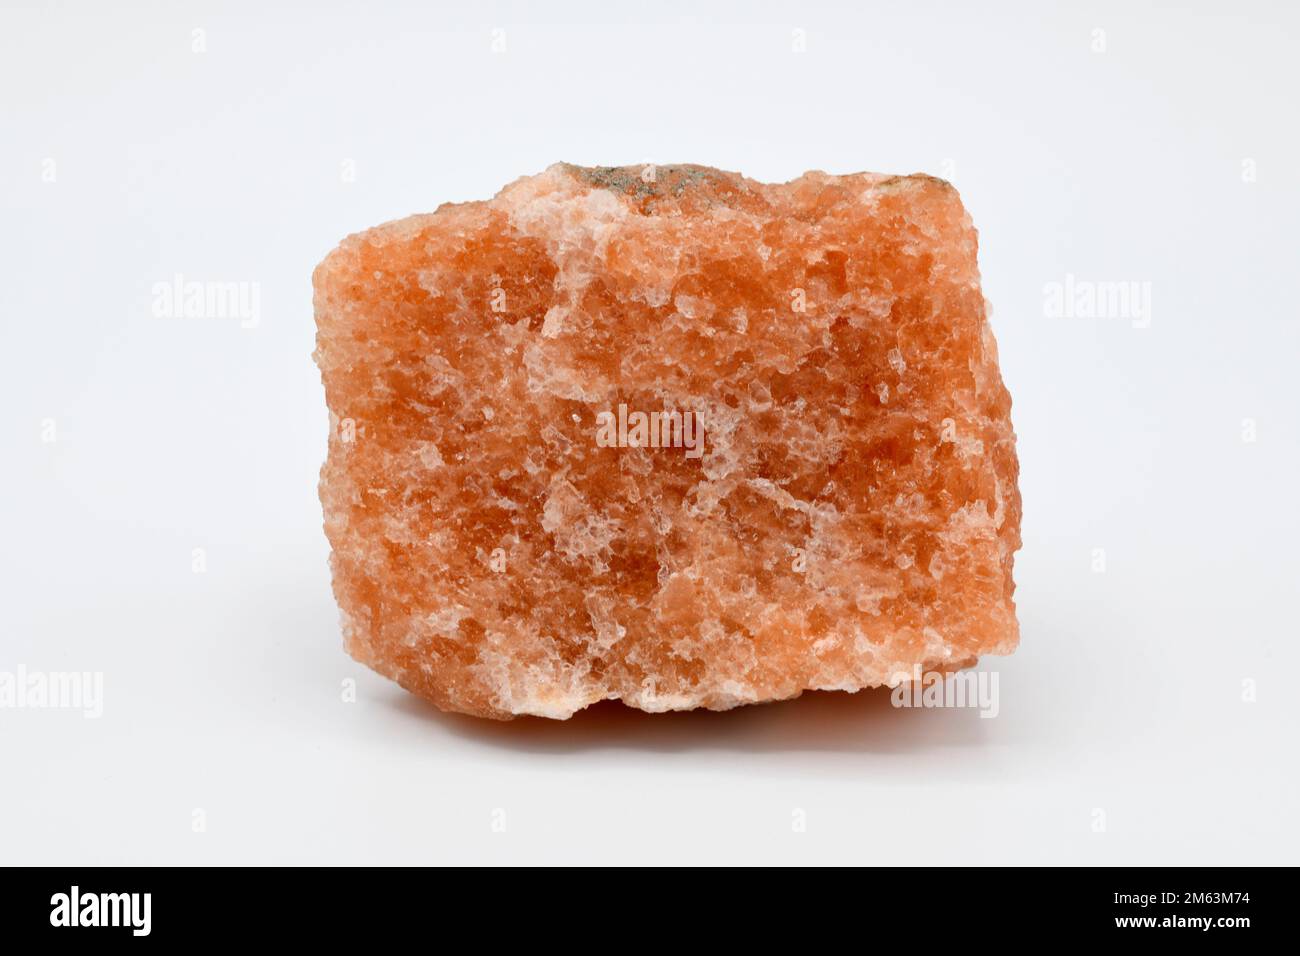 Sylvin oder Sylvite ist ein Kaliumchlorid-Mineral. Diese Probe stammt aus Cardona, Barcelona, Katalonien, Spanien. Stockfoto